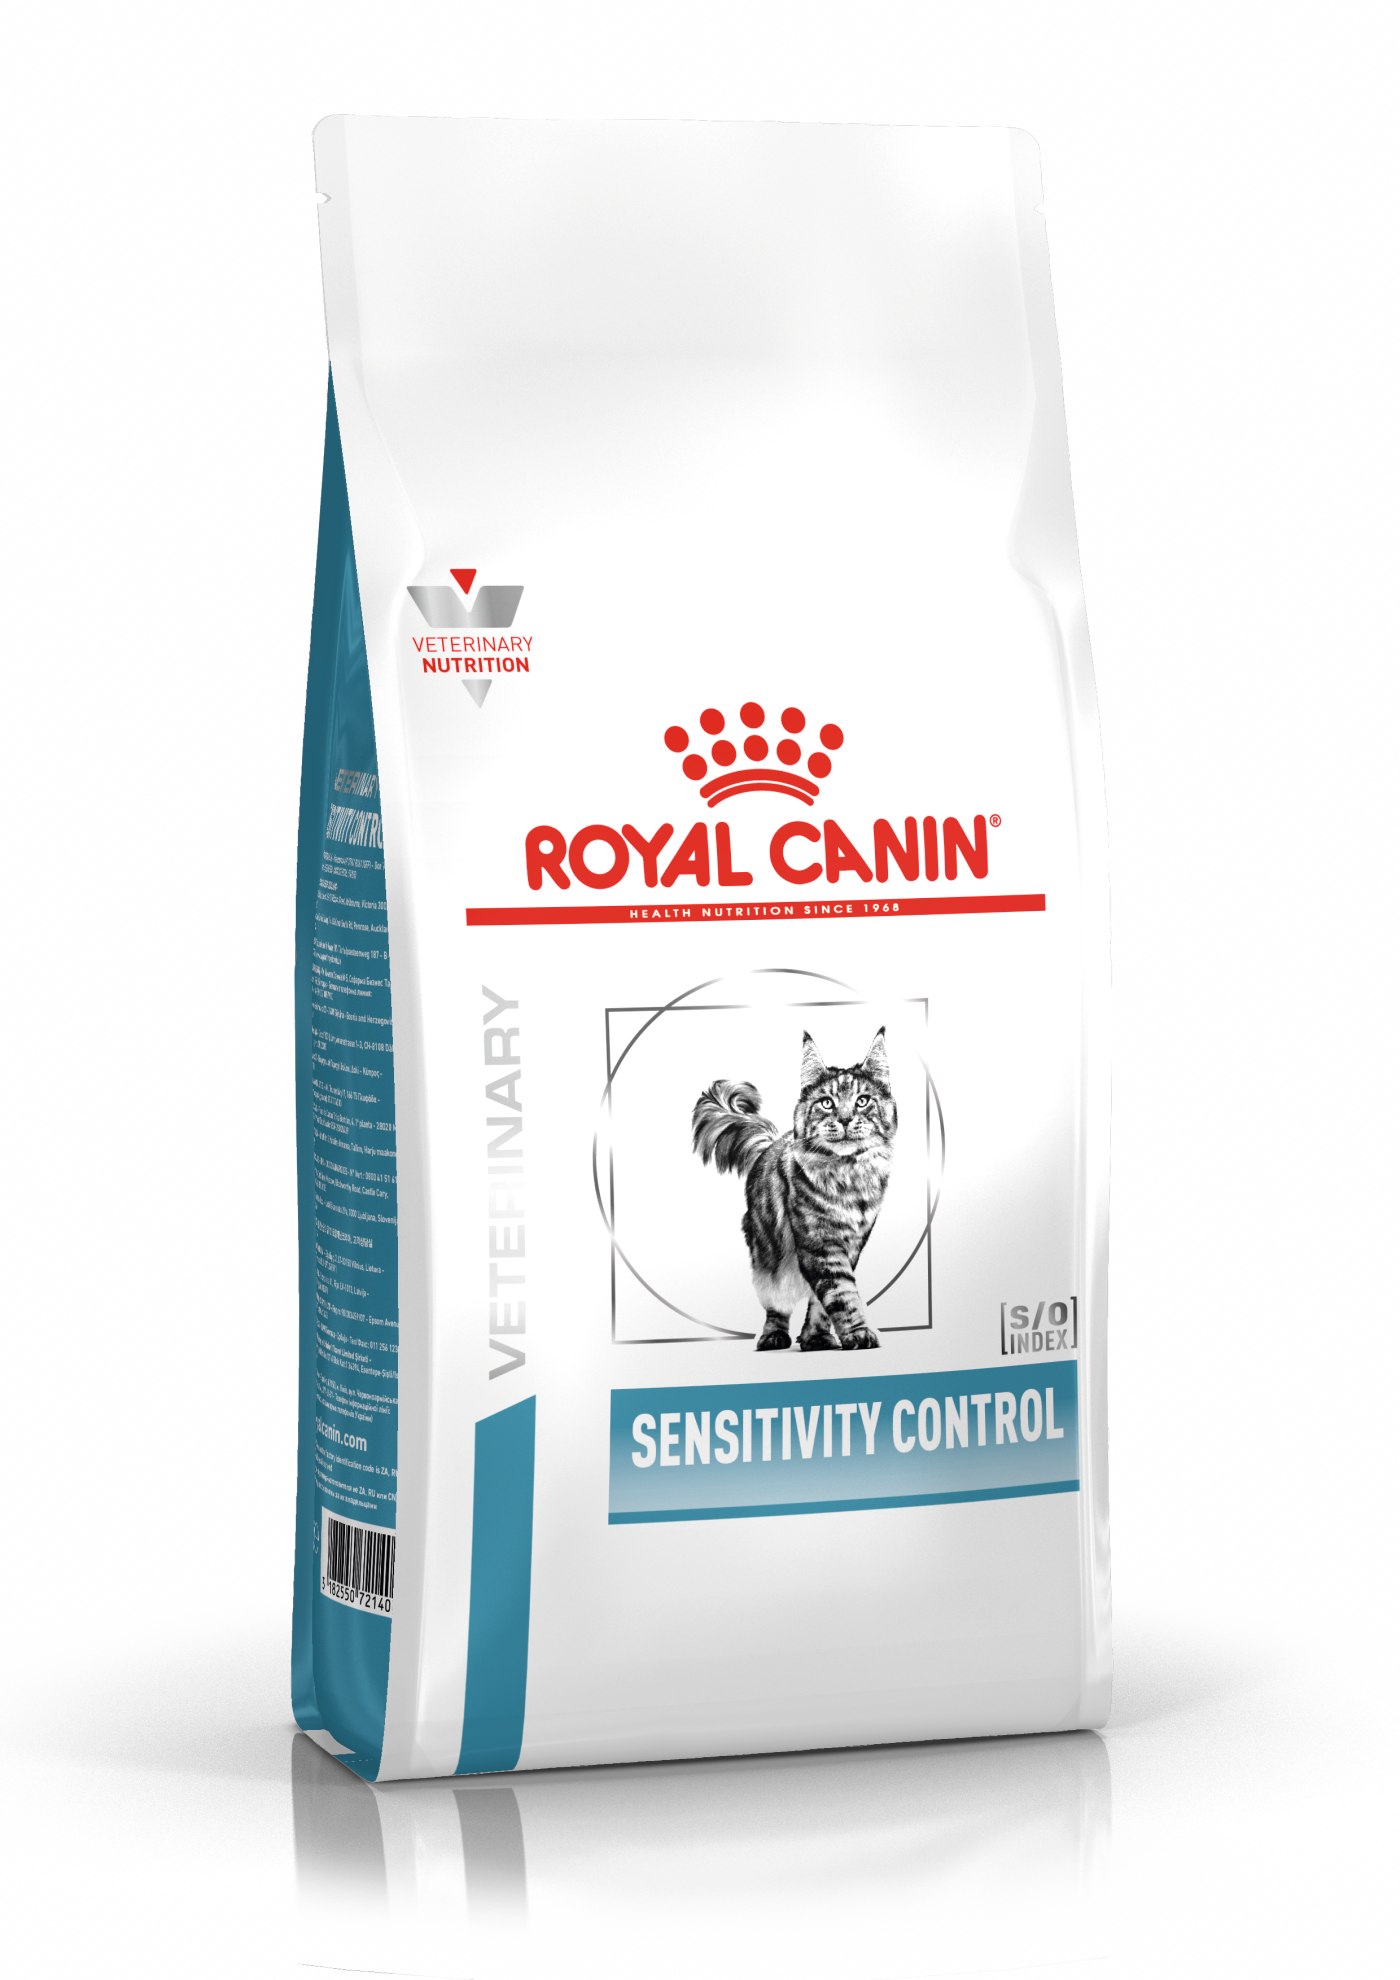 royal canin sensitivity control cat dry